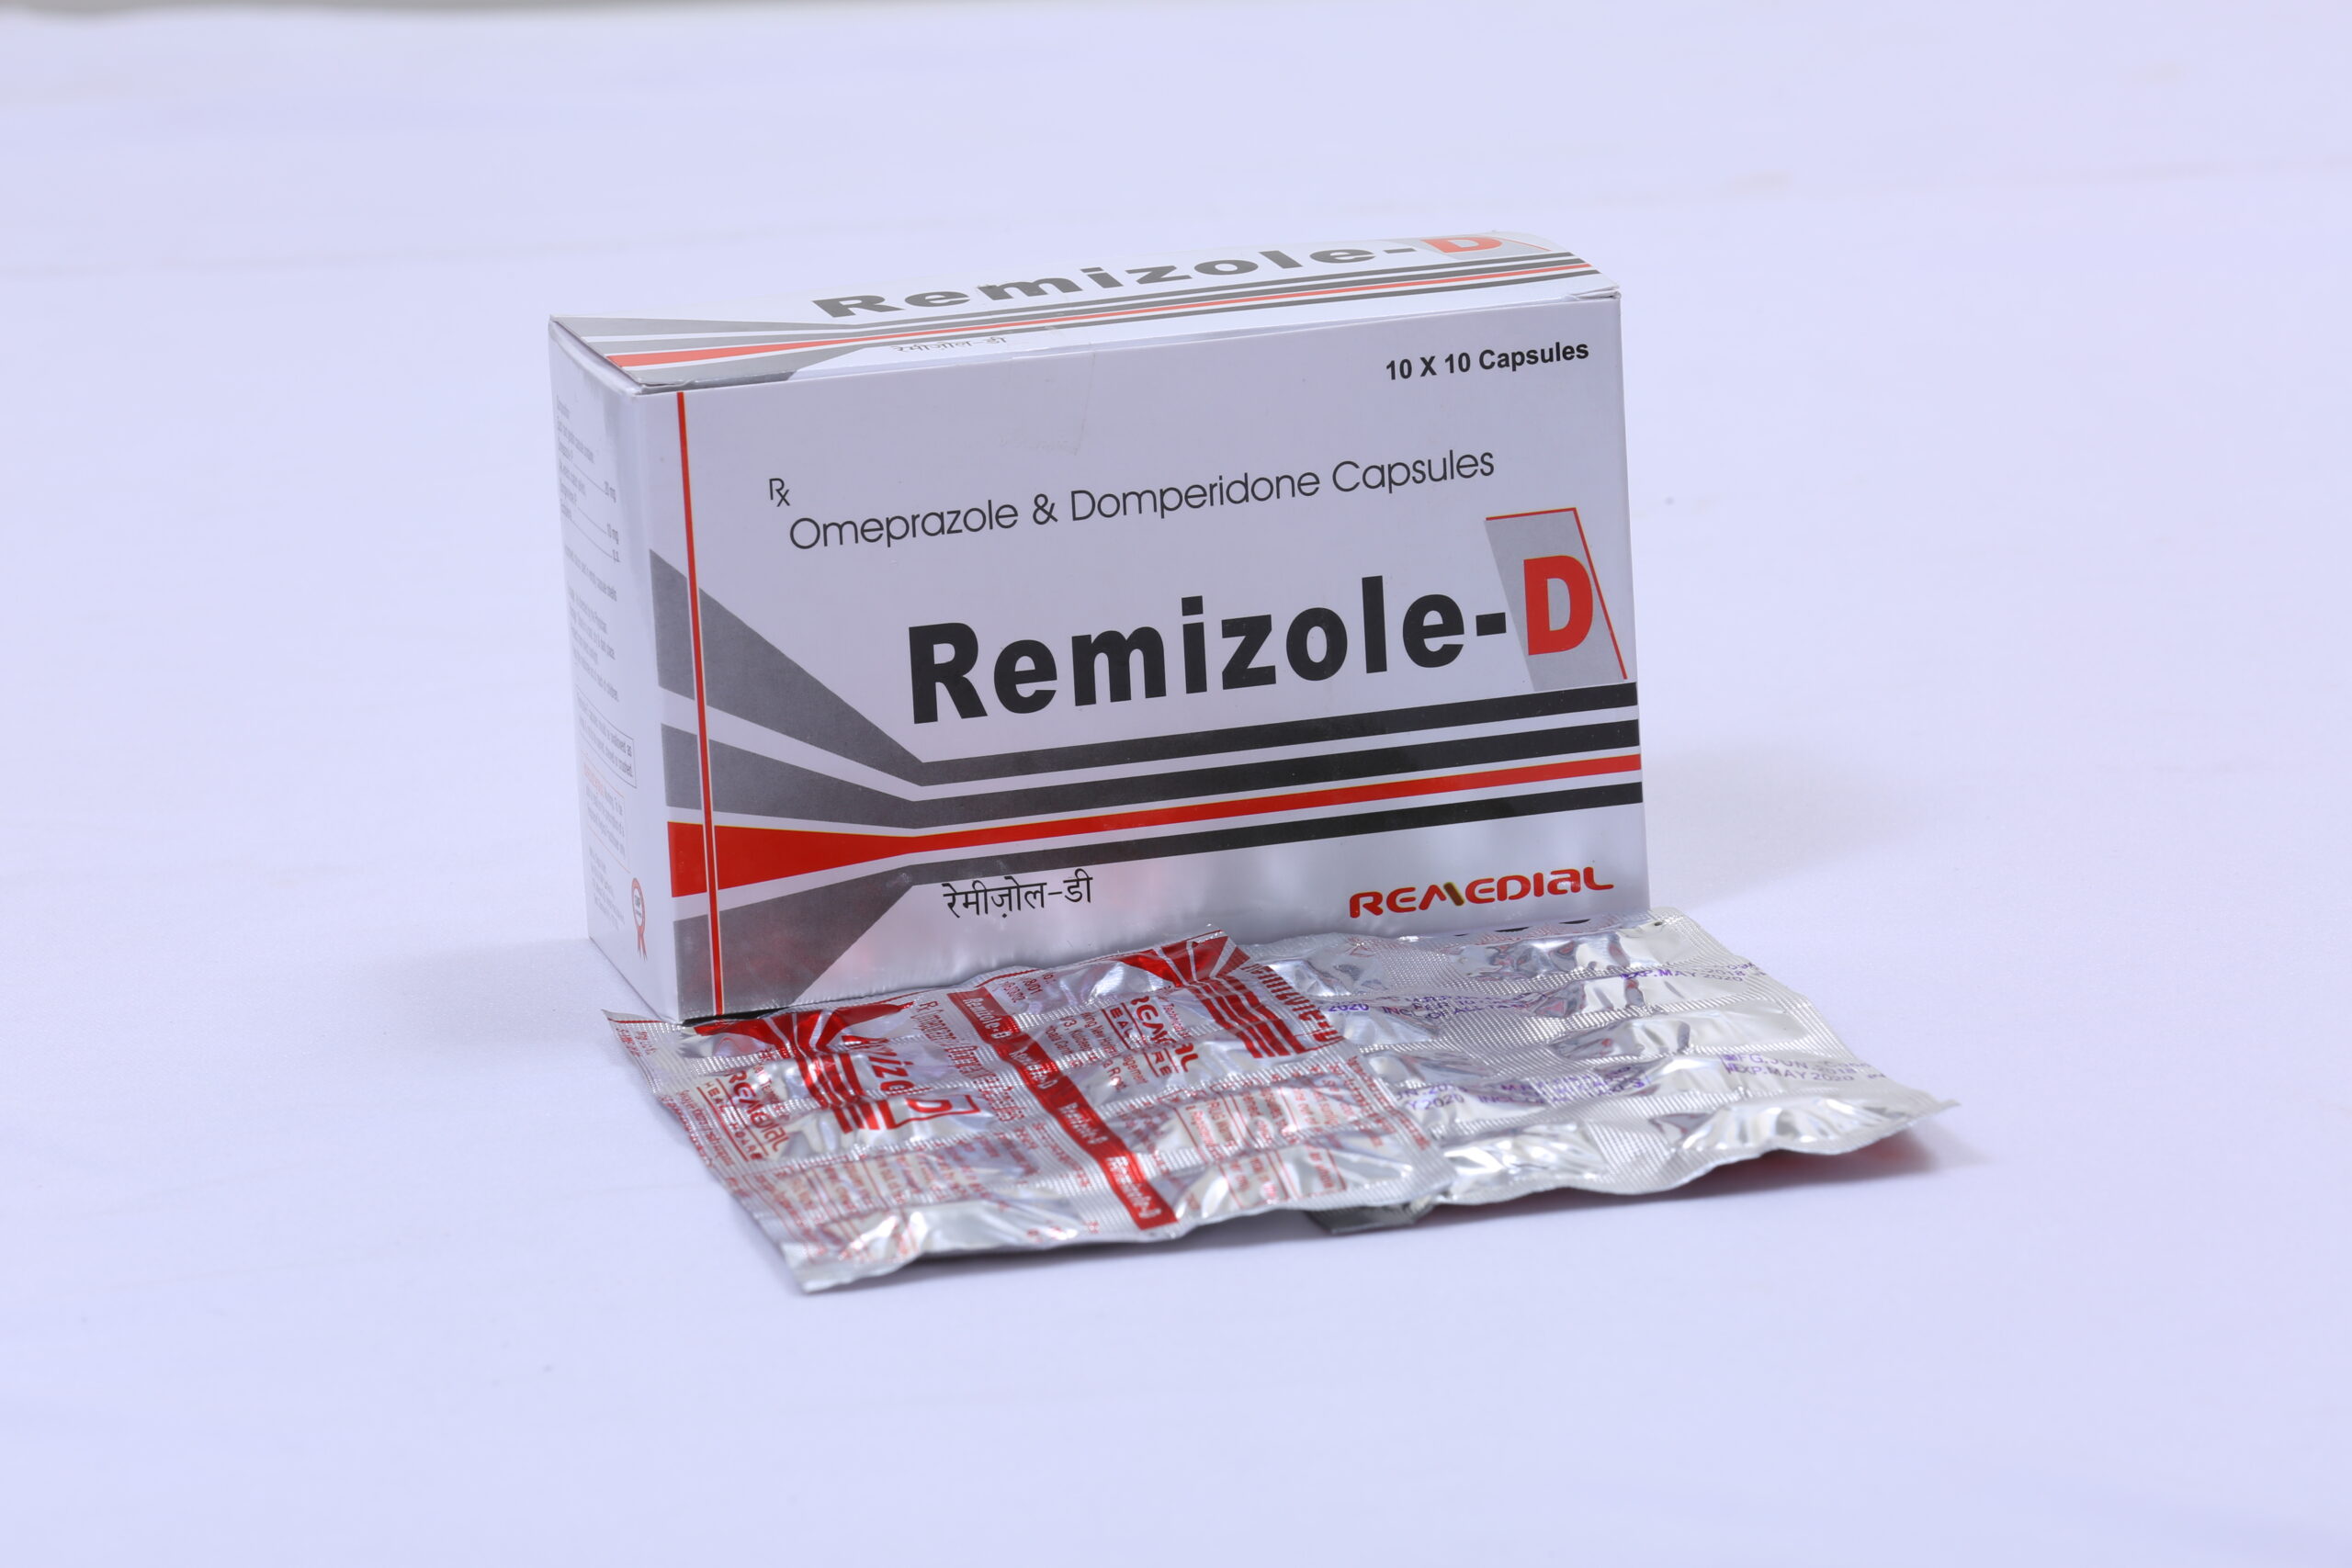 REMIZOLE-D (Omeprazole 20mg + Domperidone 10mg)